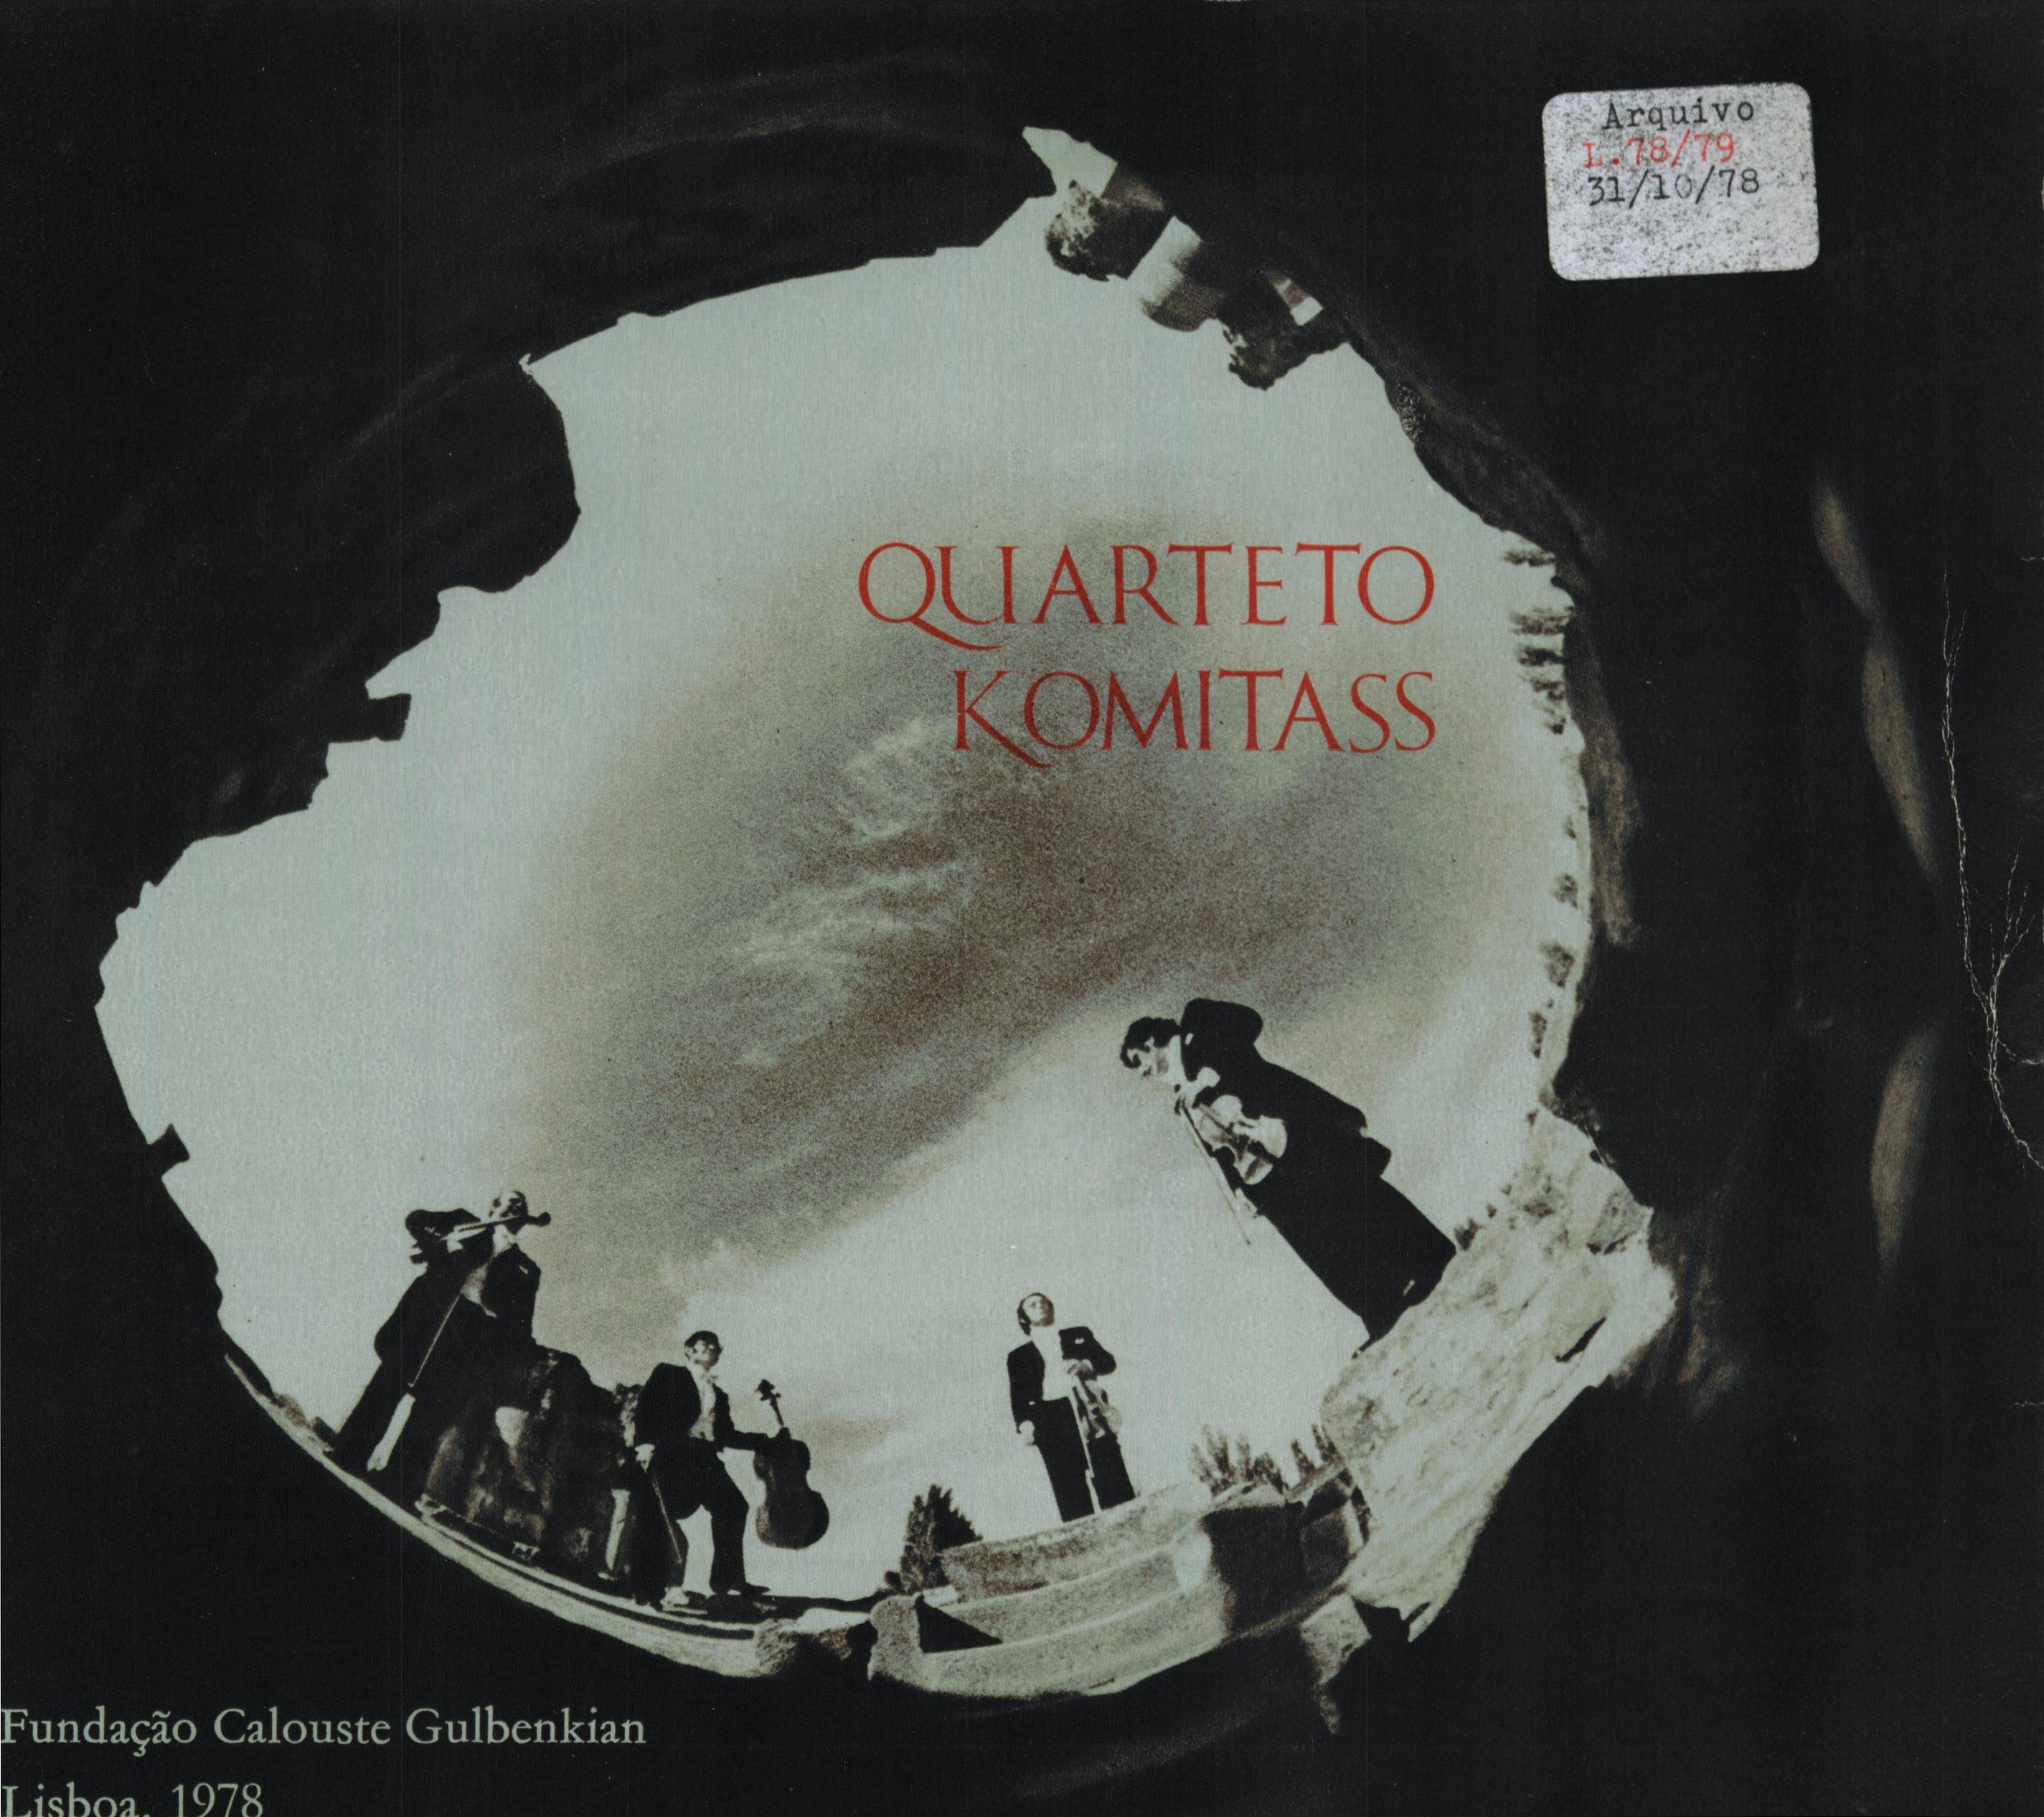 Concerto Quarteto Komitass